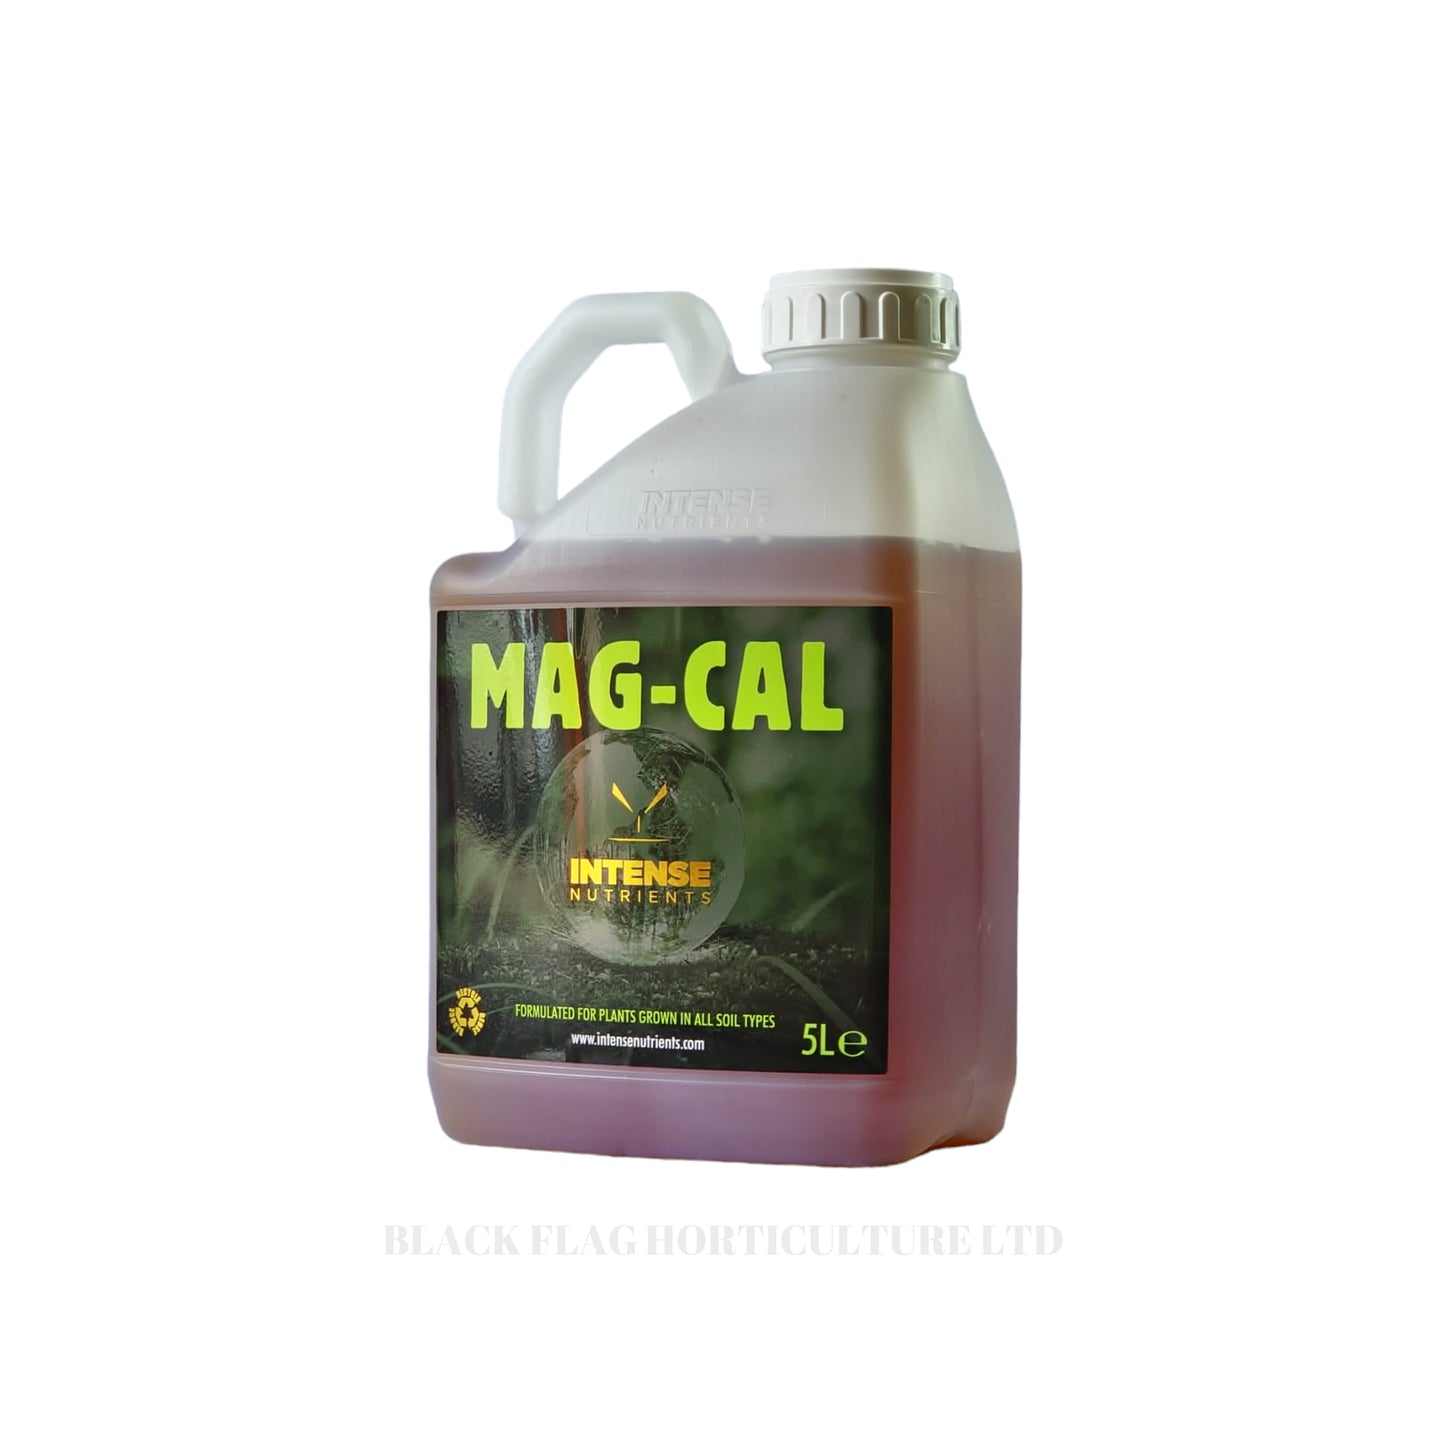 Intense Nutrients - Mag-Cal - Magnesium Calcium - 5 Litres